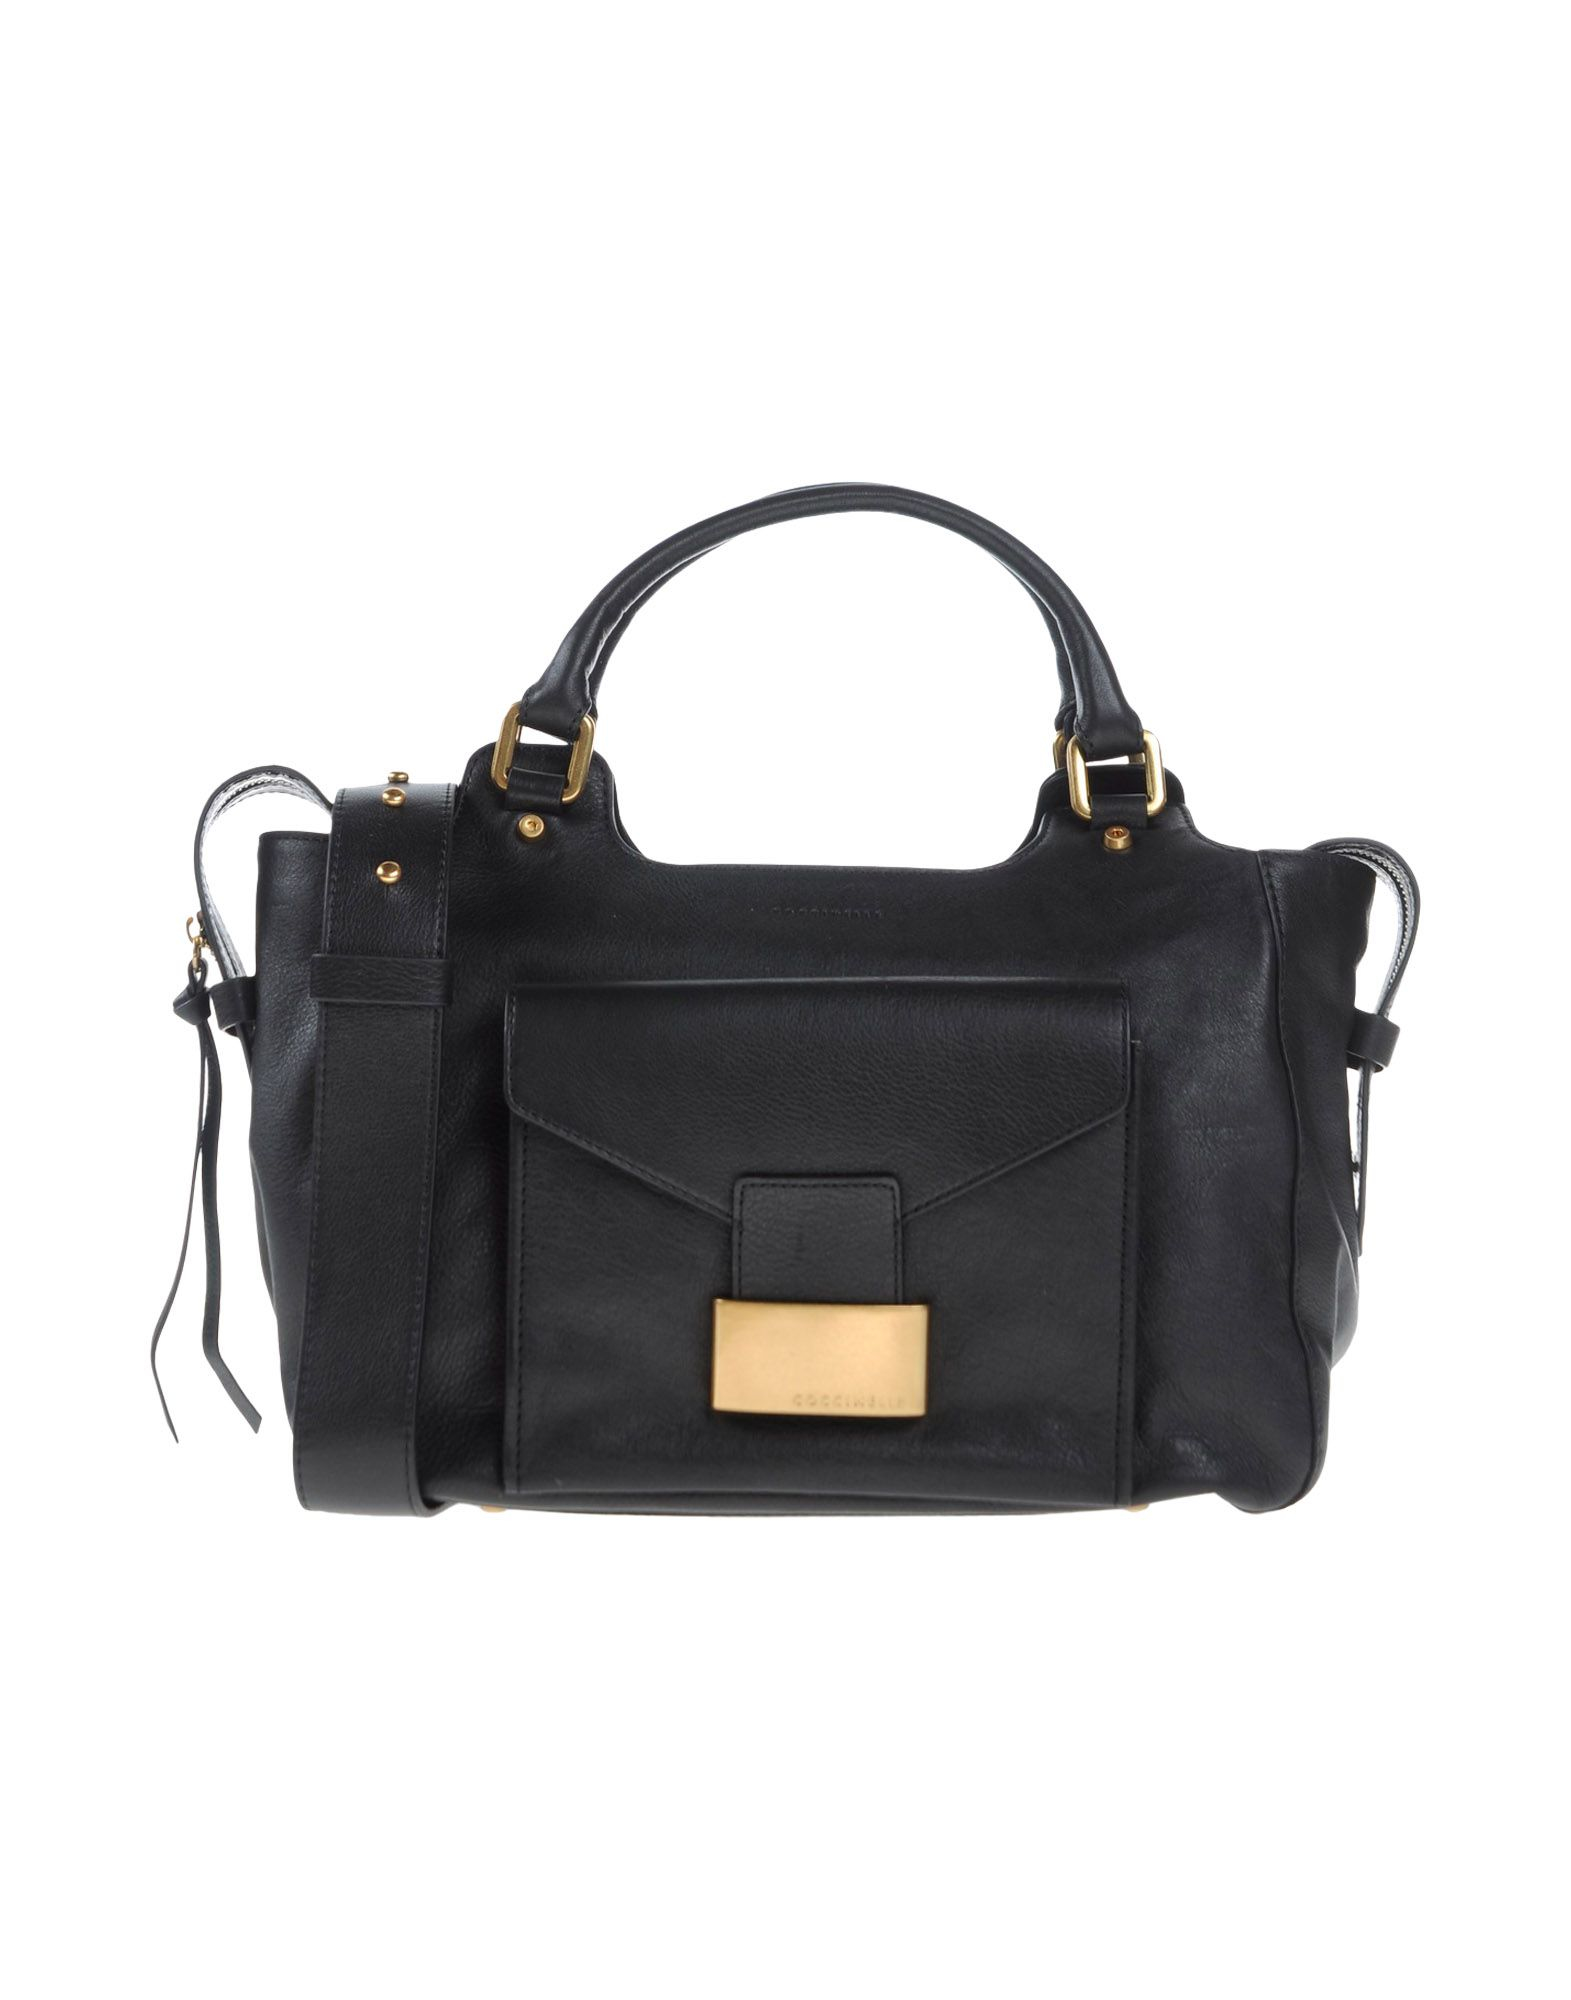 Lyst - Coccinelle Shoulder Bag in Black